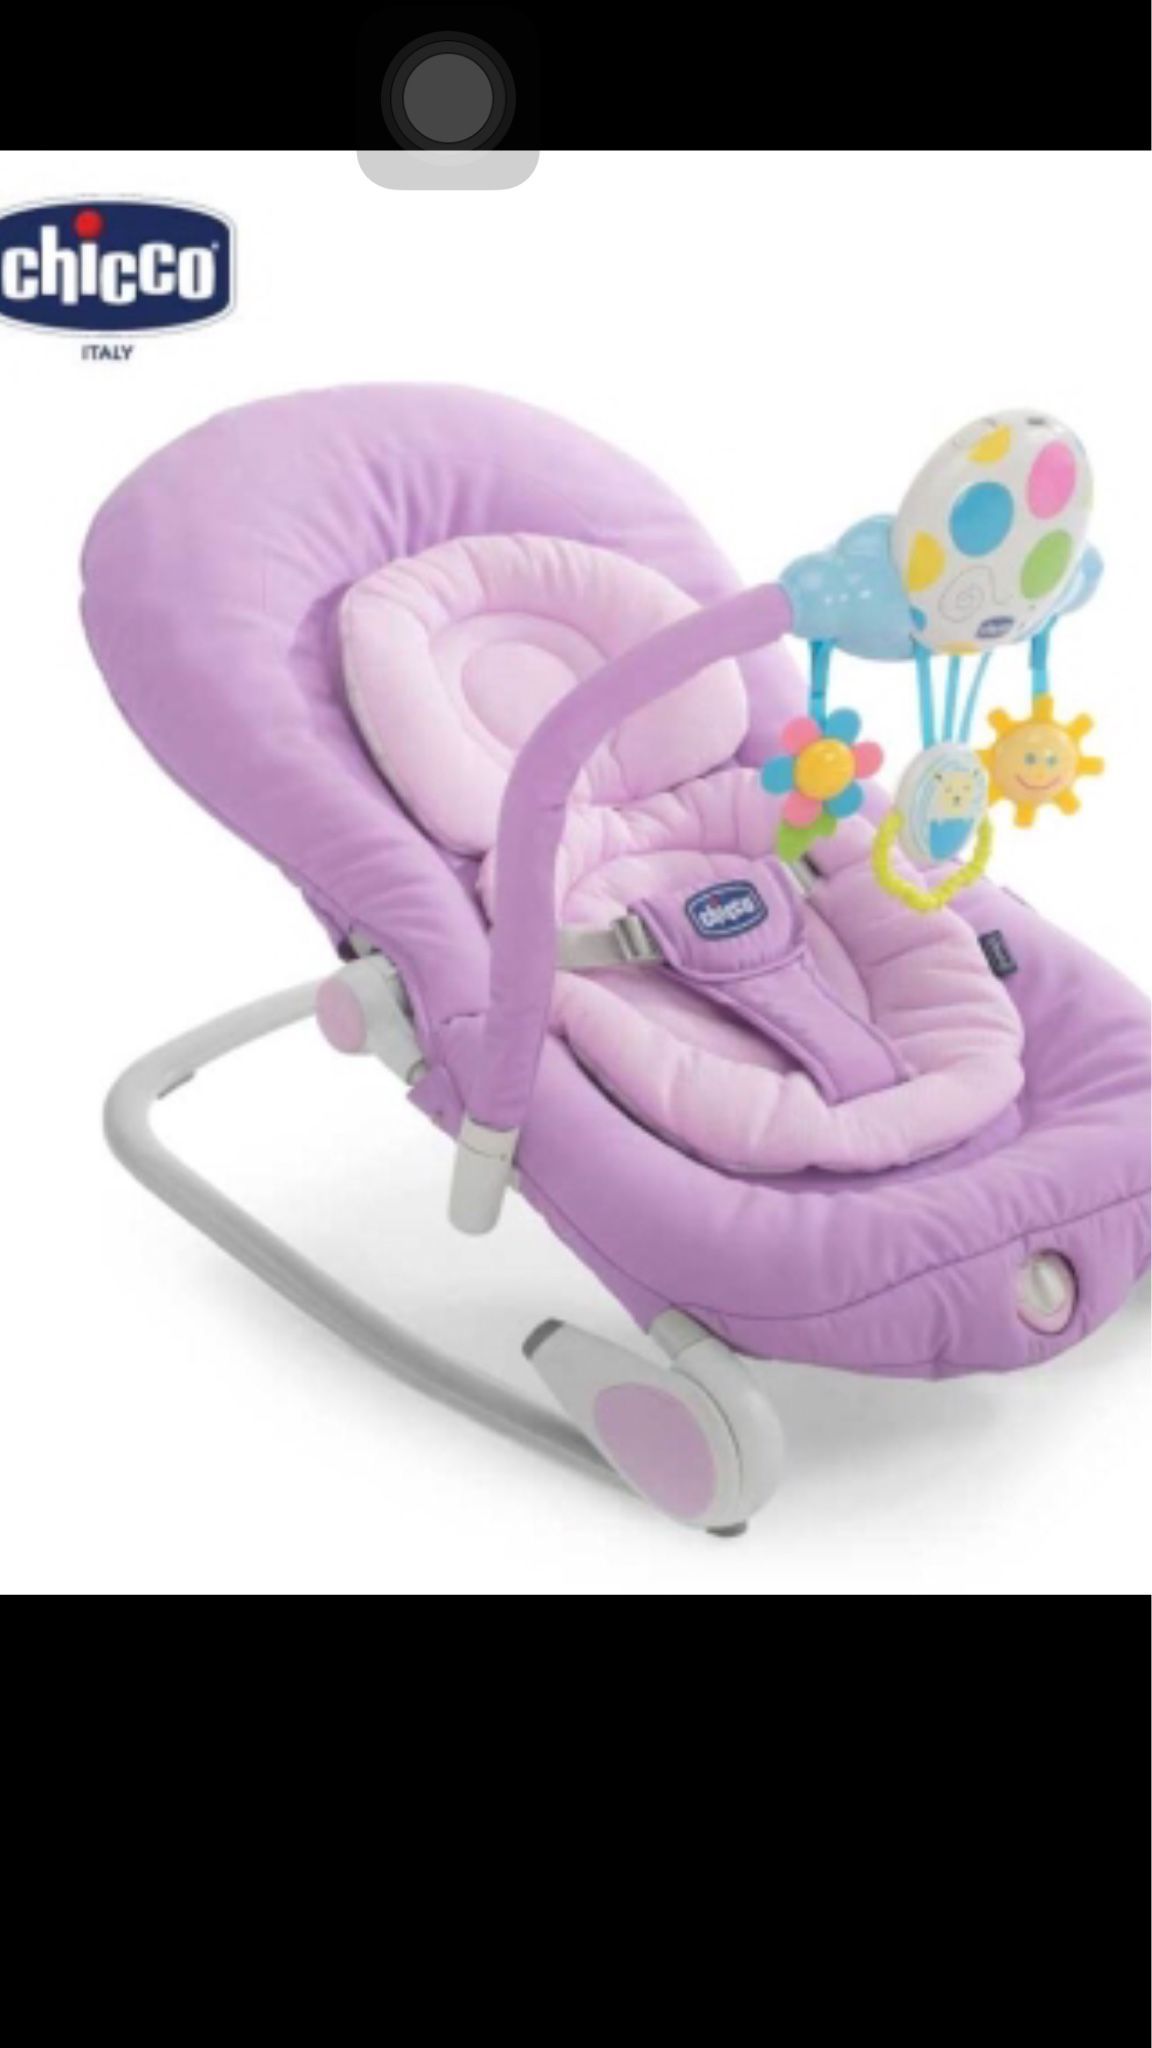 售 chicco紫色搖椅 九成新 朋友送的 寶寶不喜歡